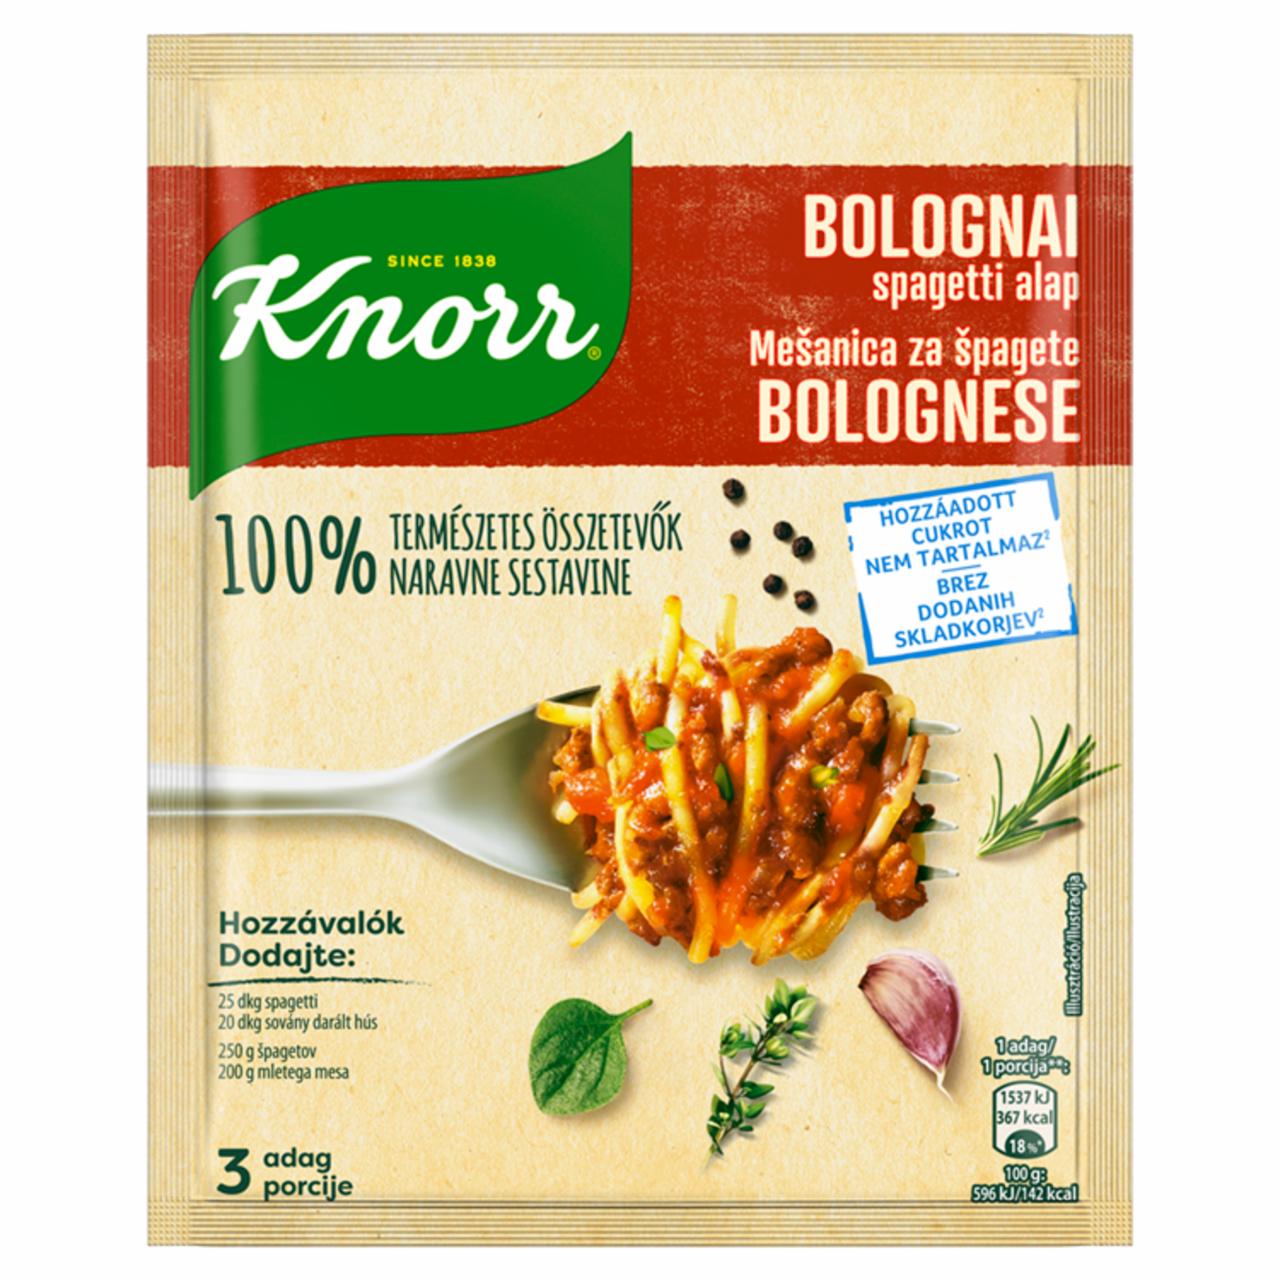 Képek - Knorr bolognai spagetti alap 38 g